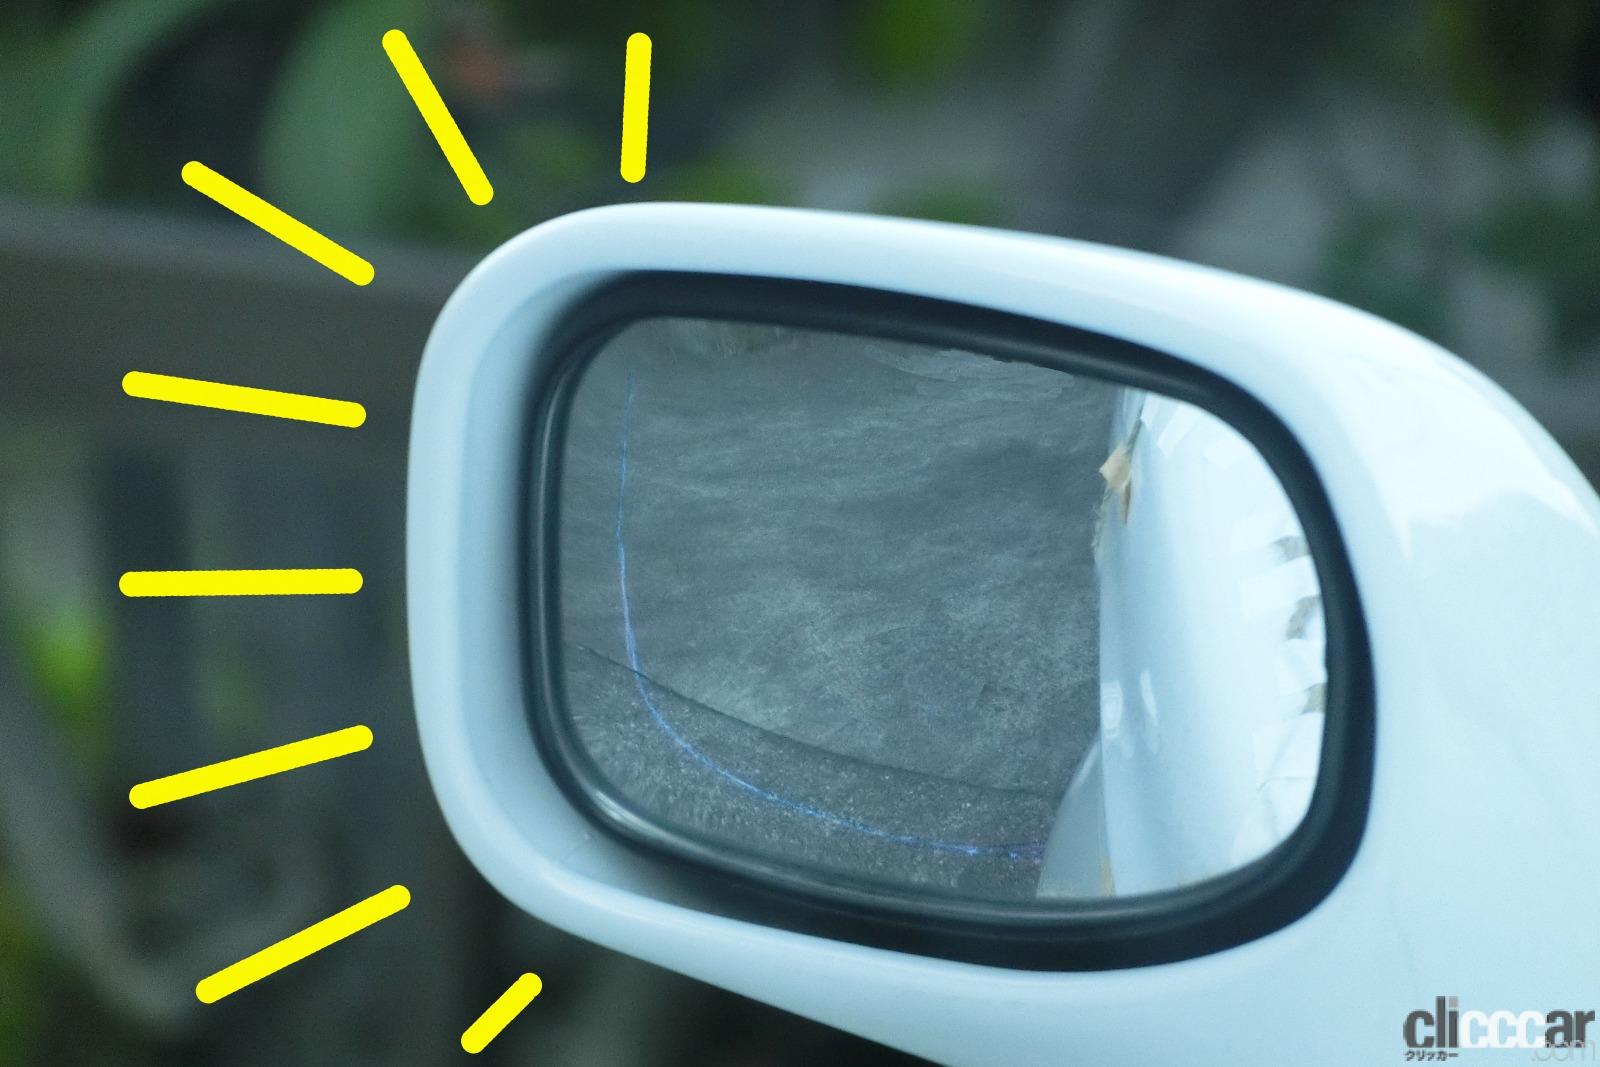 Suv車種などのサイドアンダーミラーはなぜ必要 付いてる意味 鏡に映る像の見方は 真夏の汗だく実験で探ってみた Clicccar Com